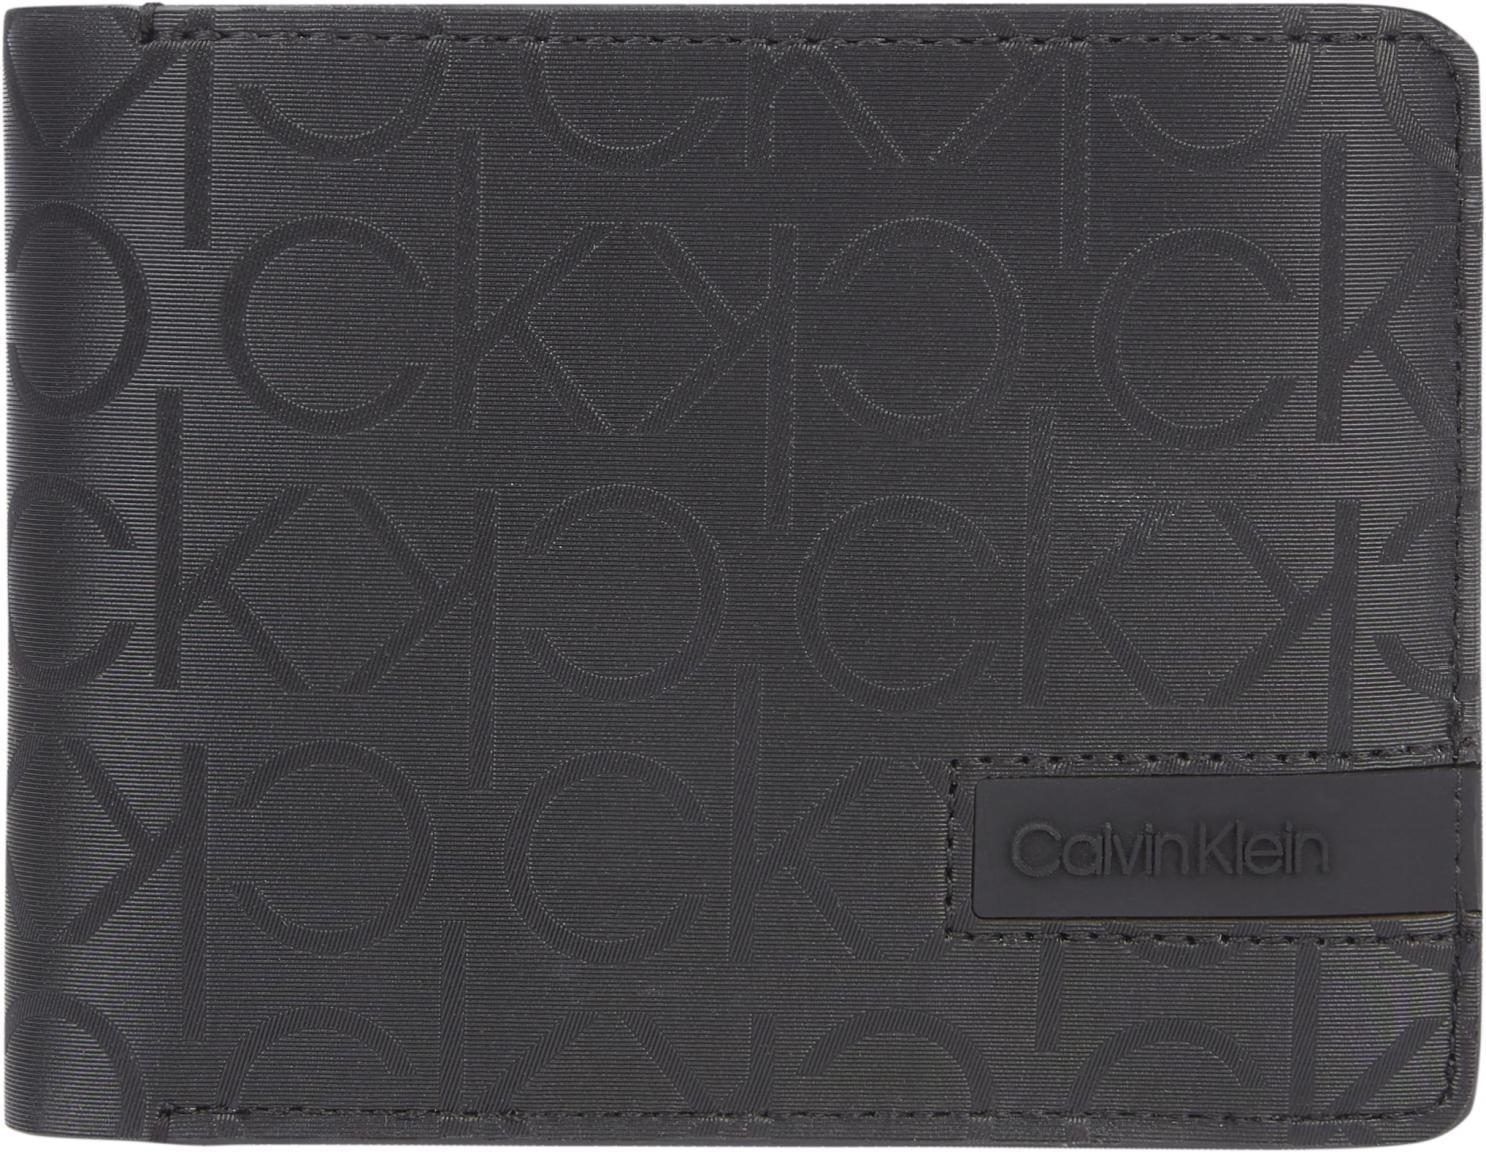 Monogram Brieftasche Herren Calvin Klein Trifold Coin RFID | Geldbörsen